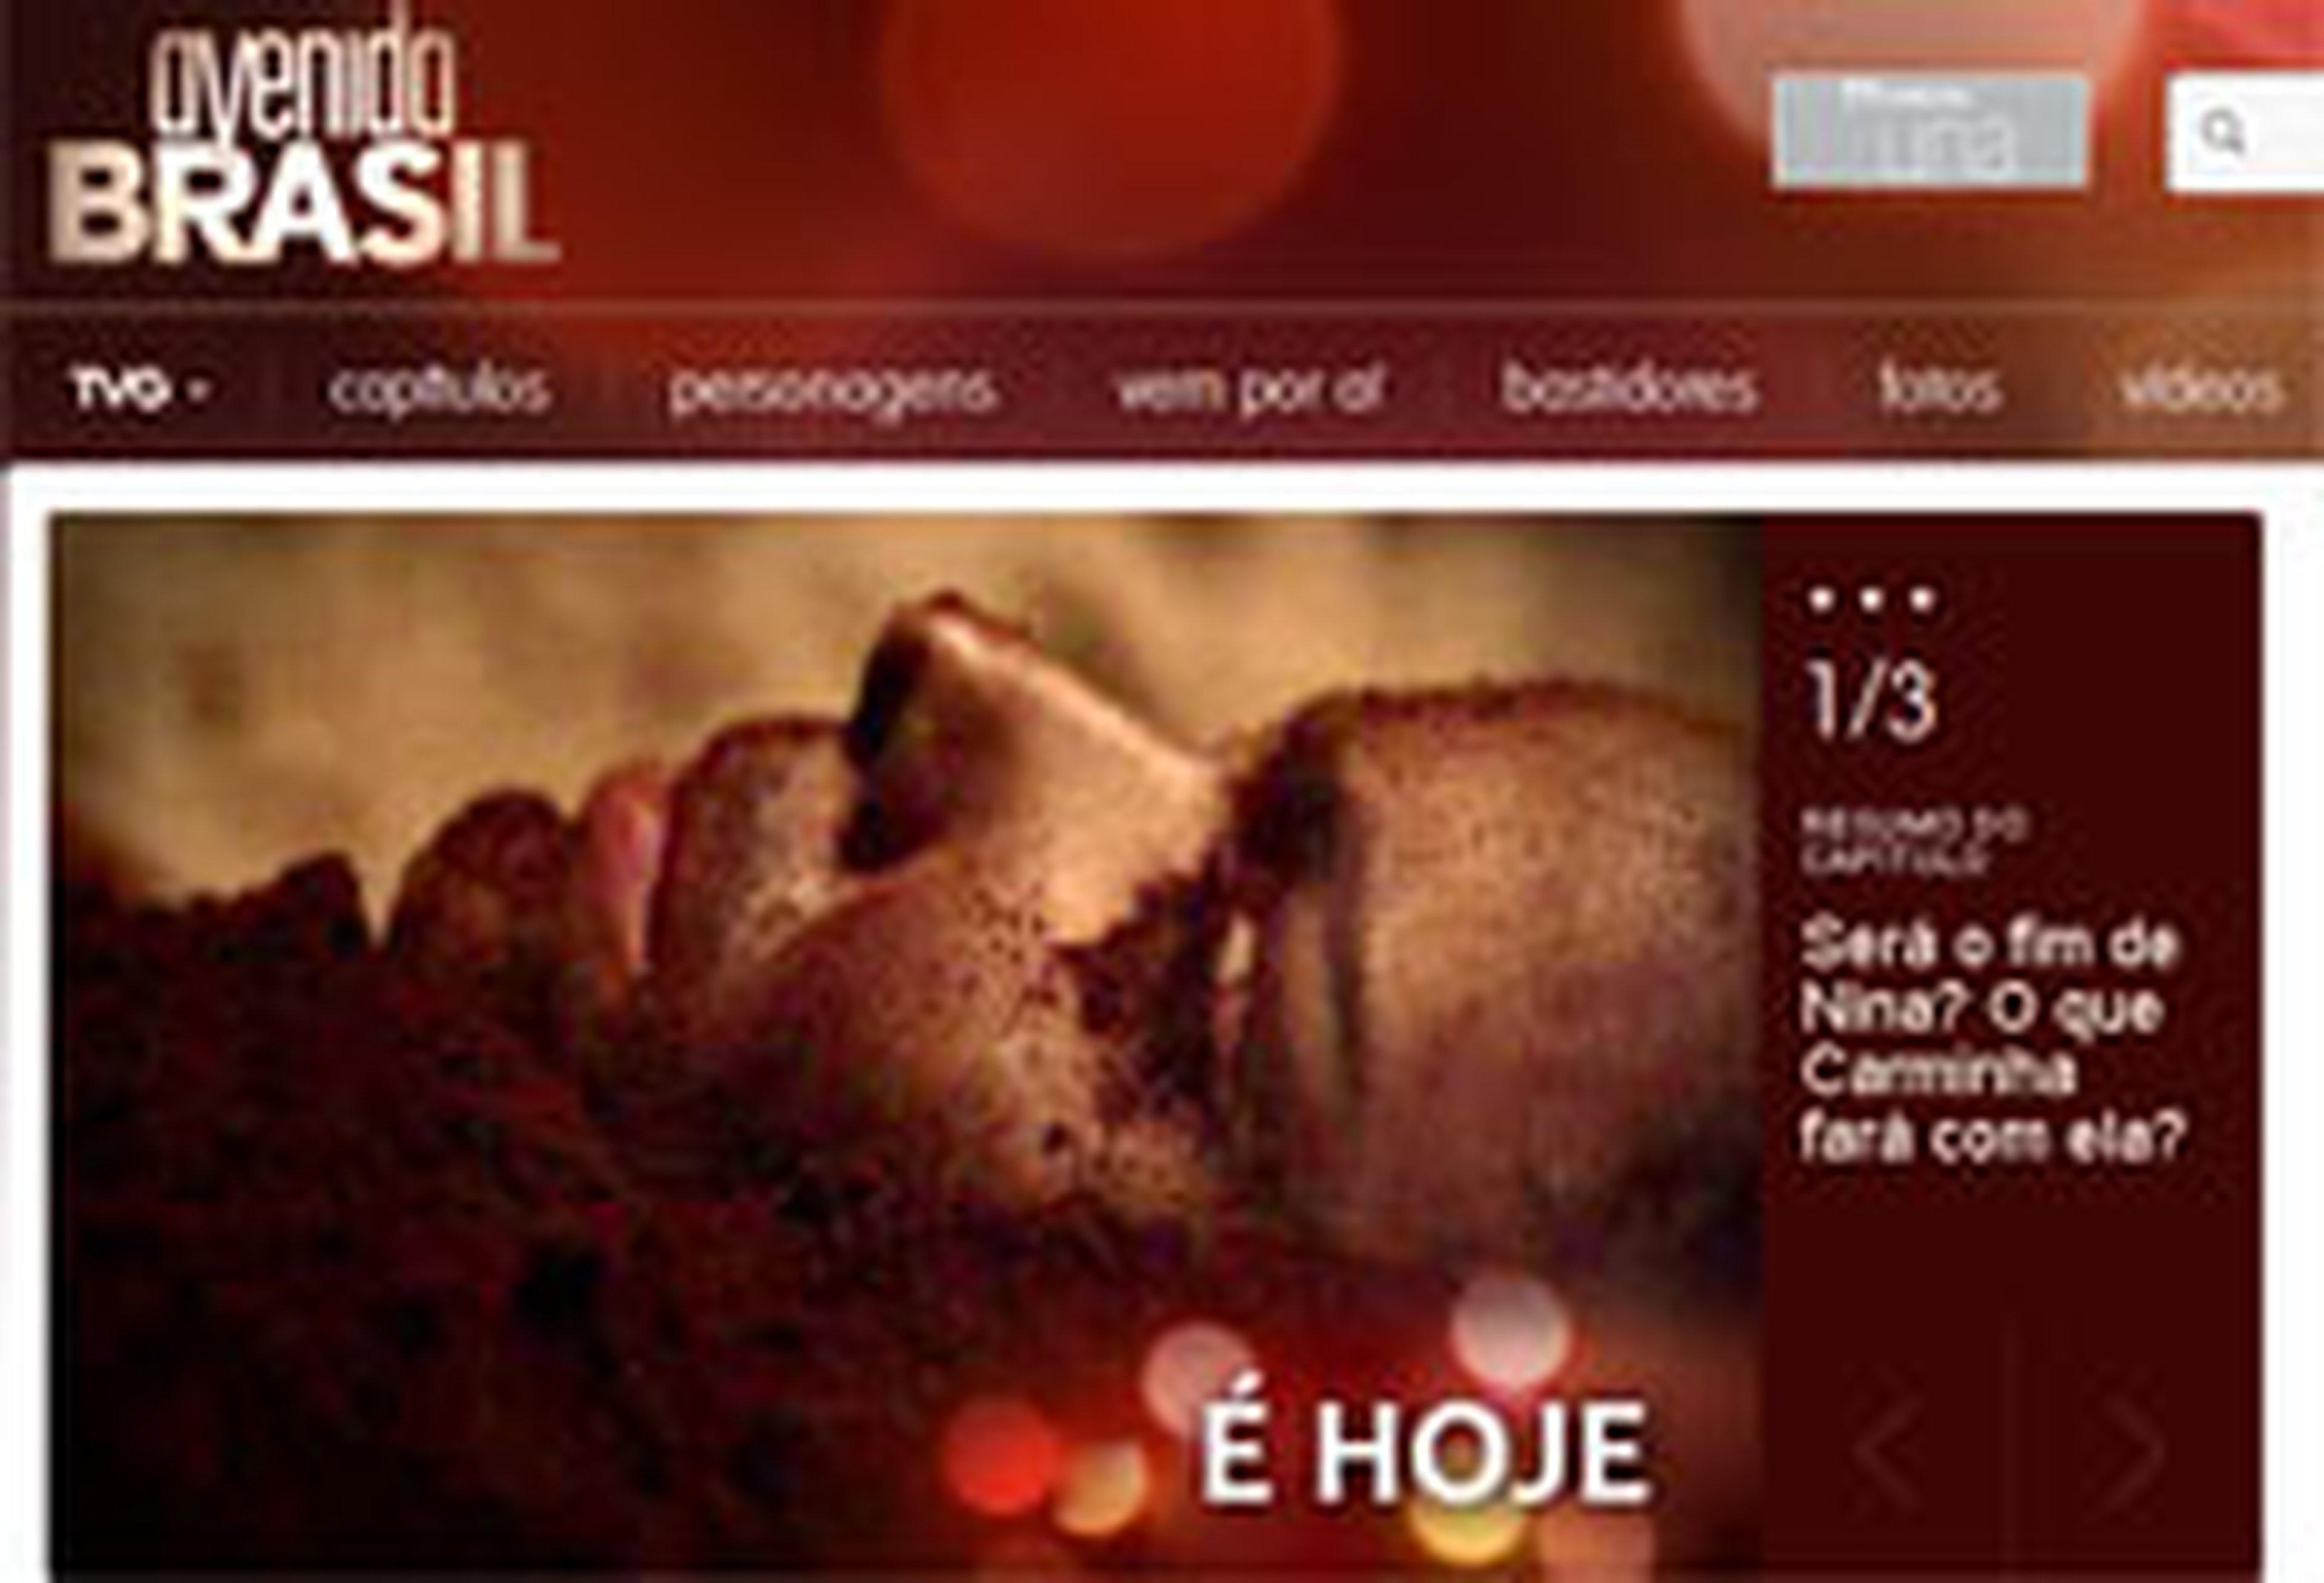 Site Avenida Brasil/Globo.com, Reprodução